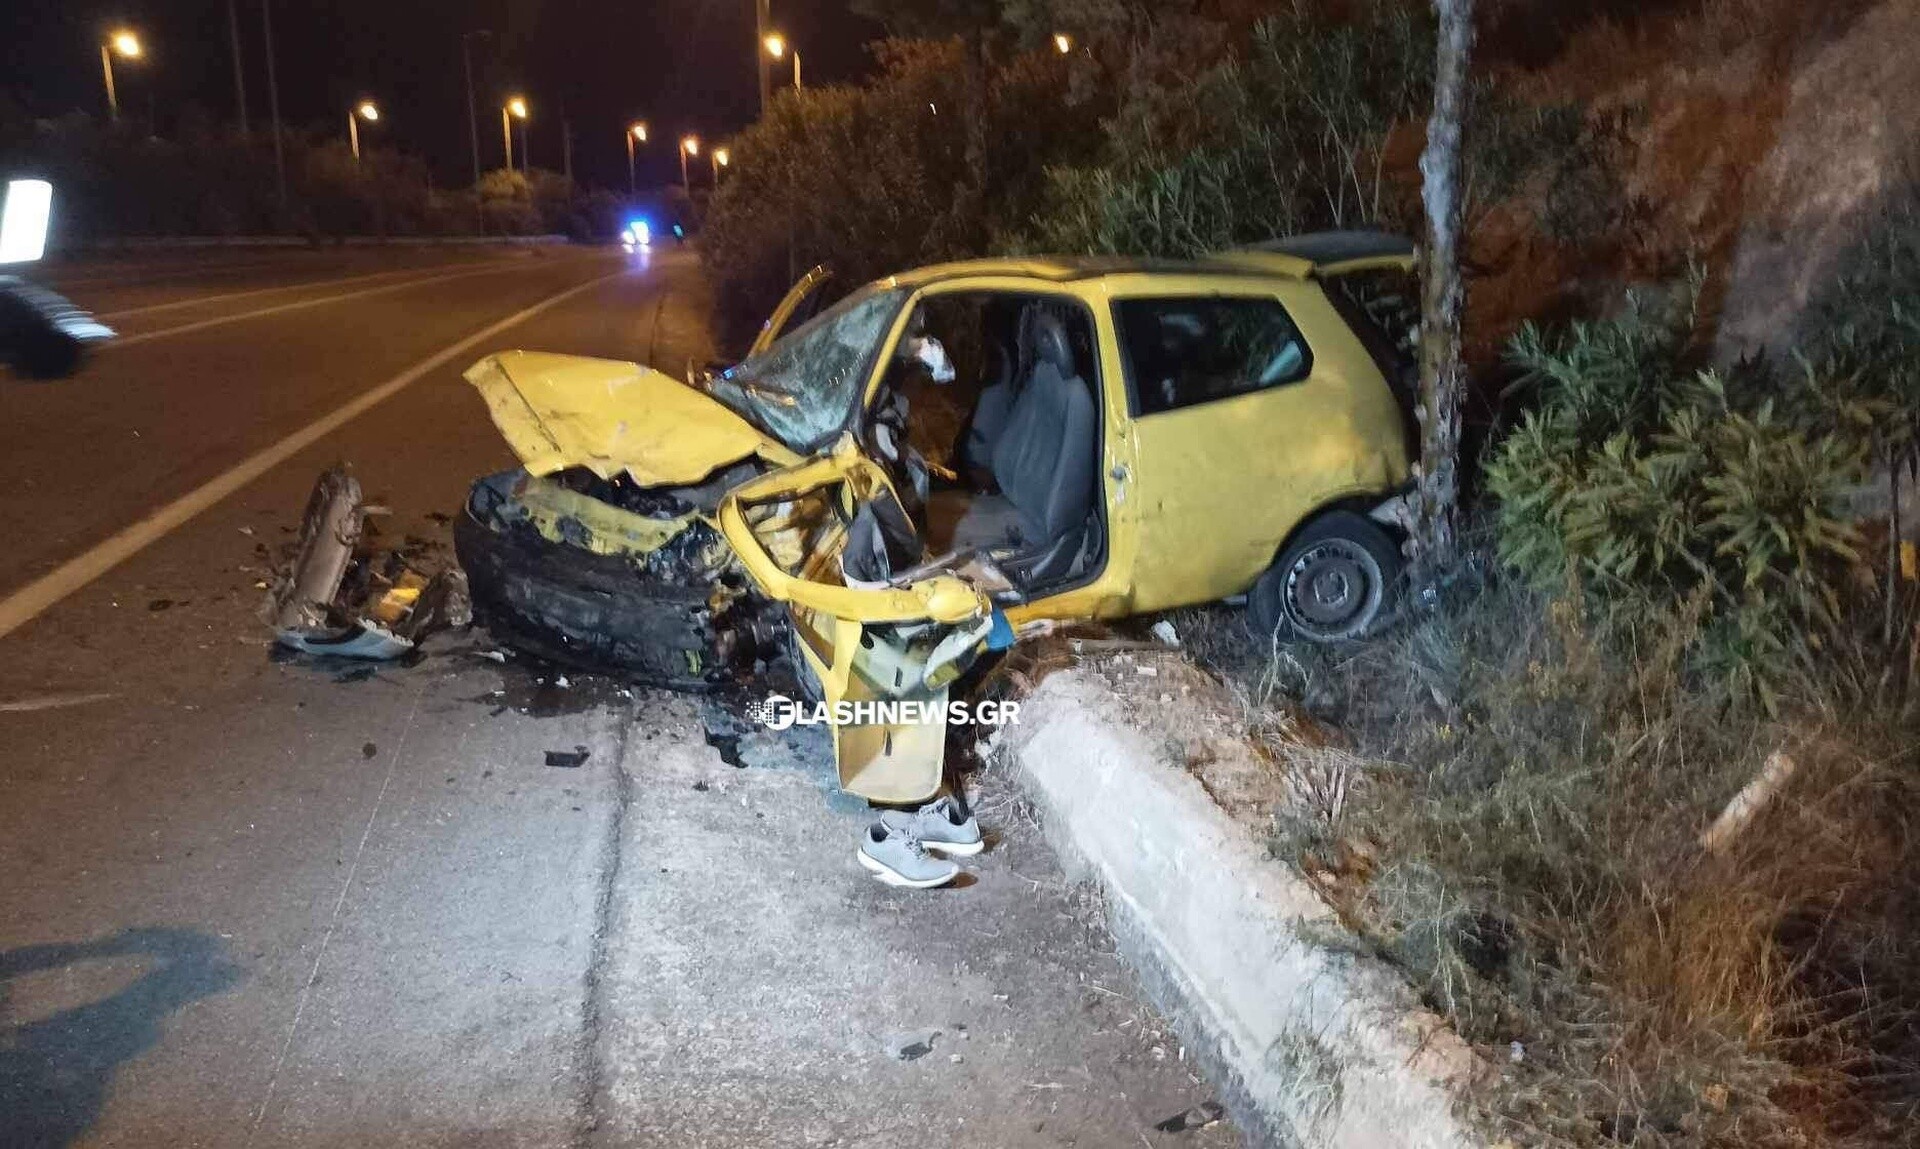 Τροχαίο στα Χανιά: Νεκρός ο οδηγός του ενός εμπλεκόμενου οχήματος - Σοκάρουν οι εικόνες